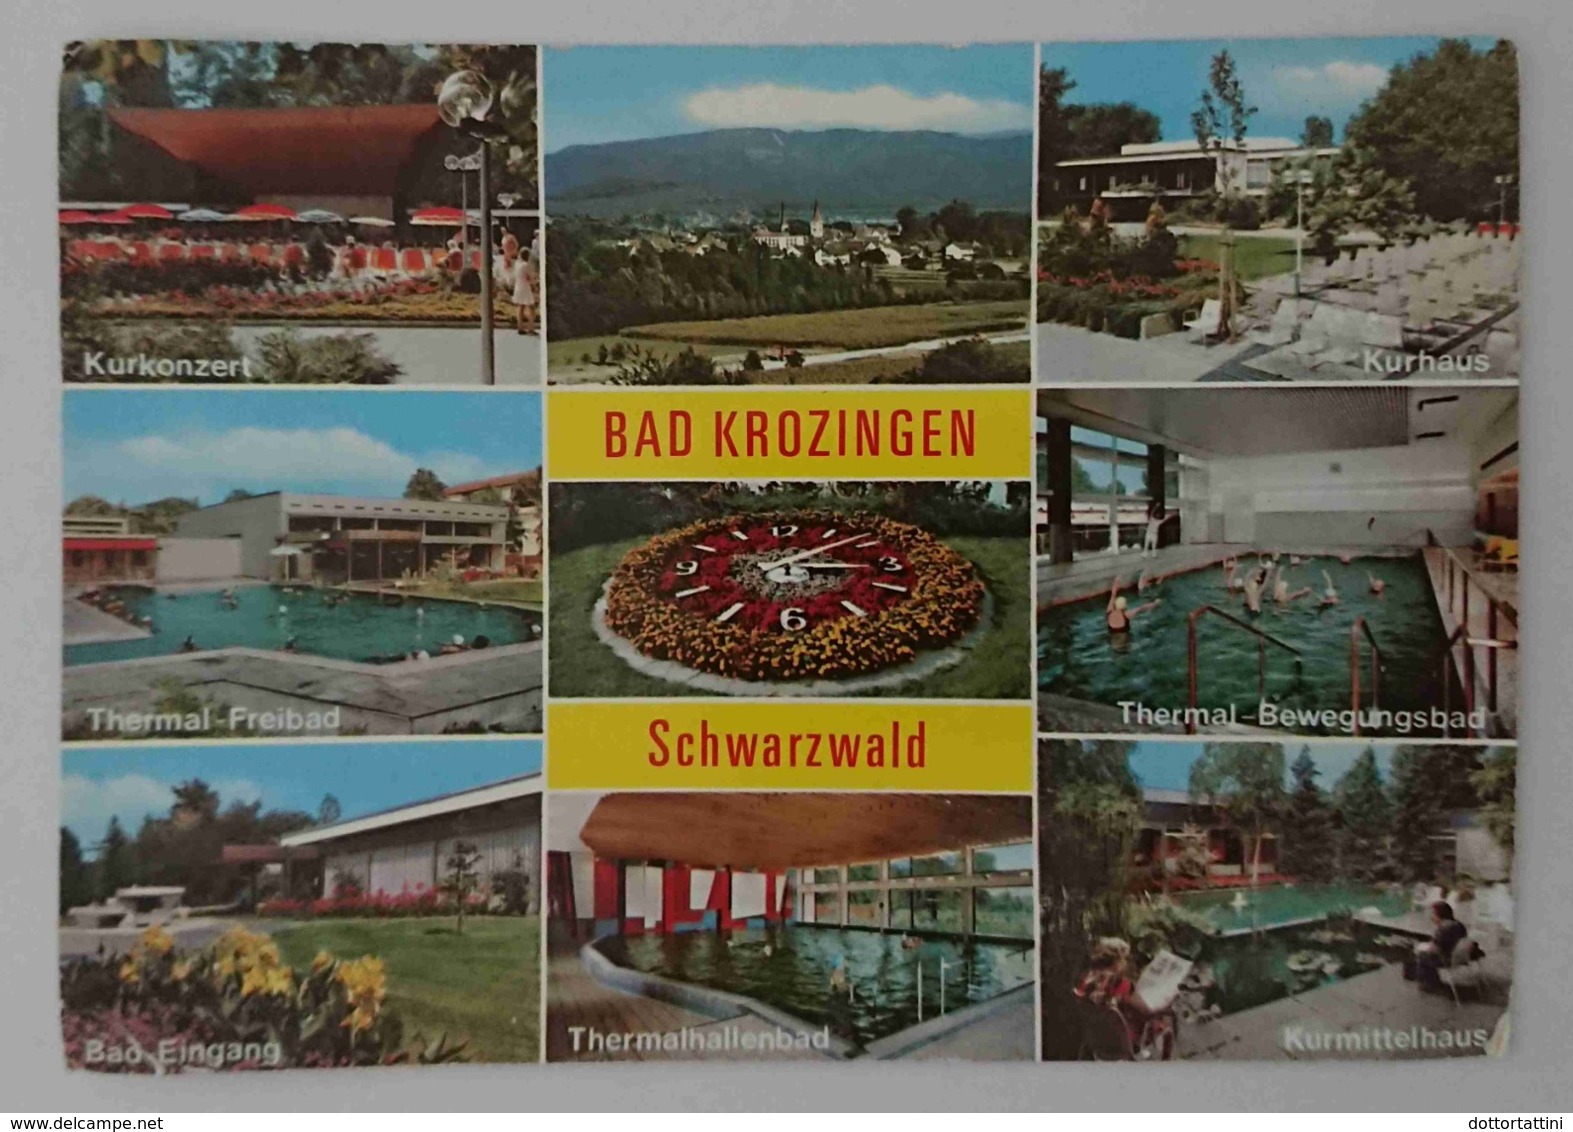 BAD KROZINGEN - Thermalkurort Am Schwarzwald - Multiview - Vg G3 - Bad Krozingen